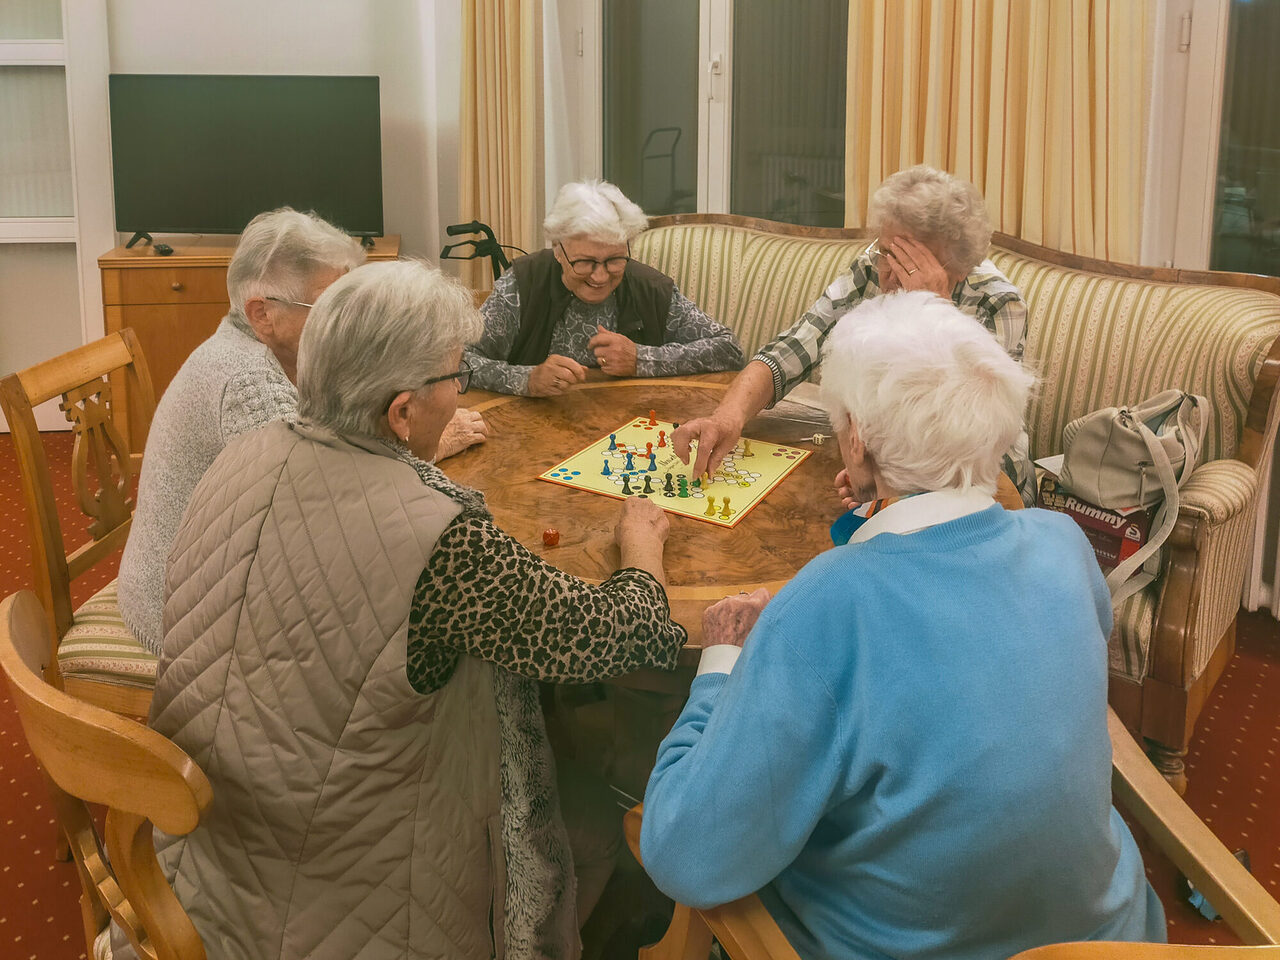 Ältere Damen sitzen am Tisch und spielen das Brettspiel "Mensch ärgere dich nicht."